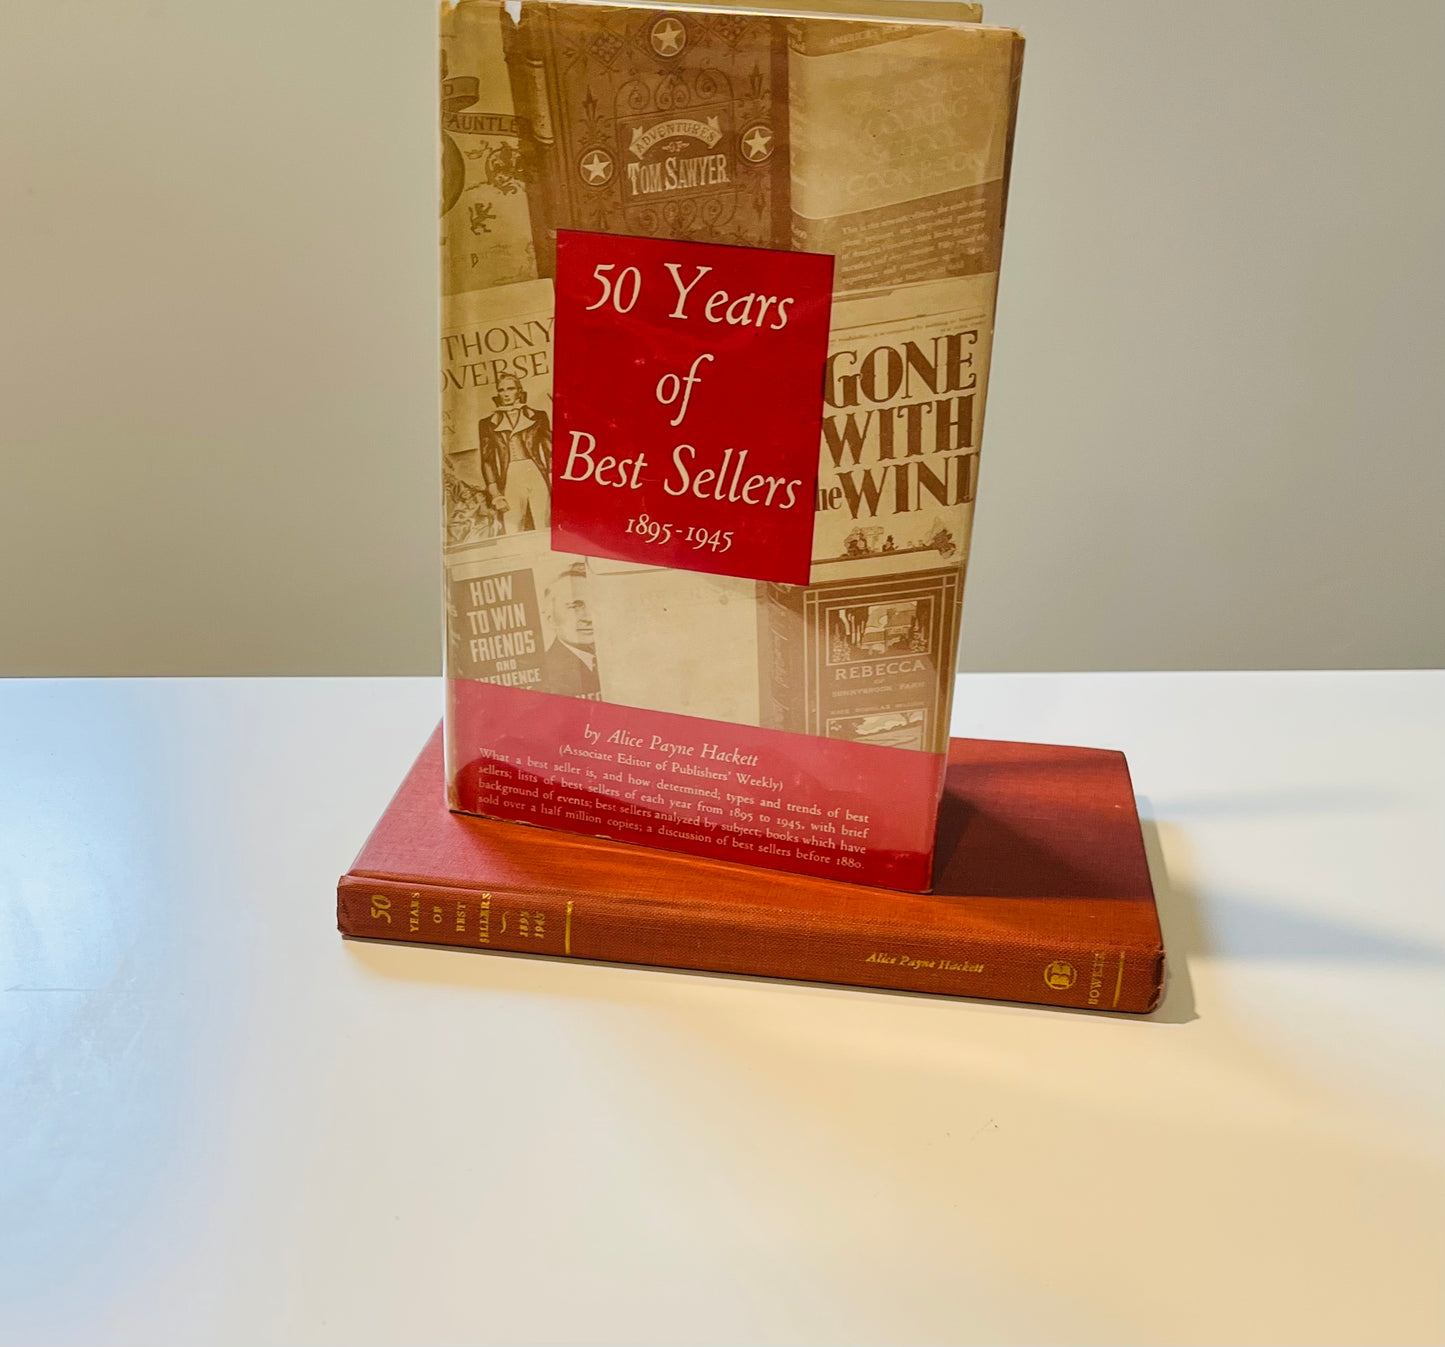 50 Years of Best Sellers 1895-1945